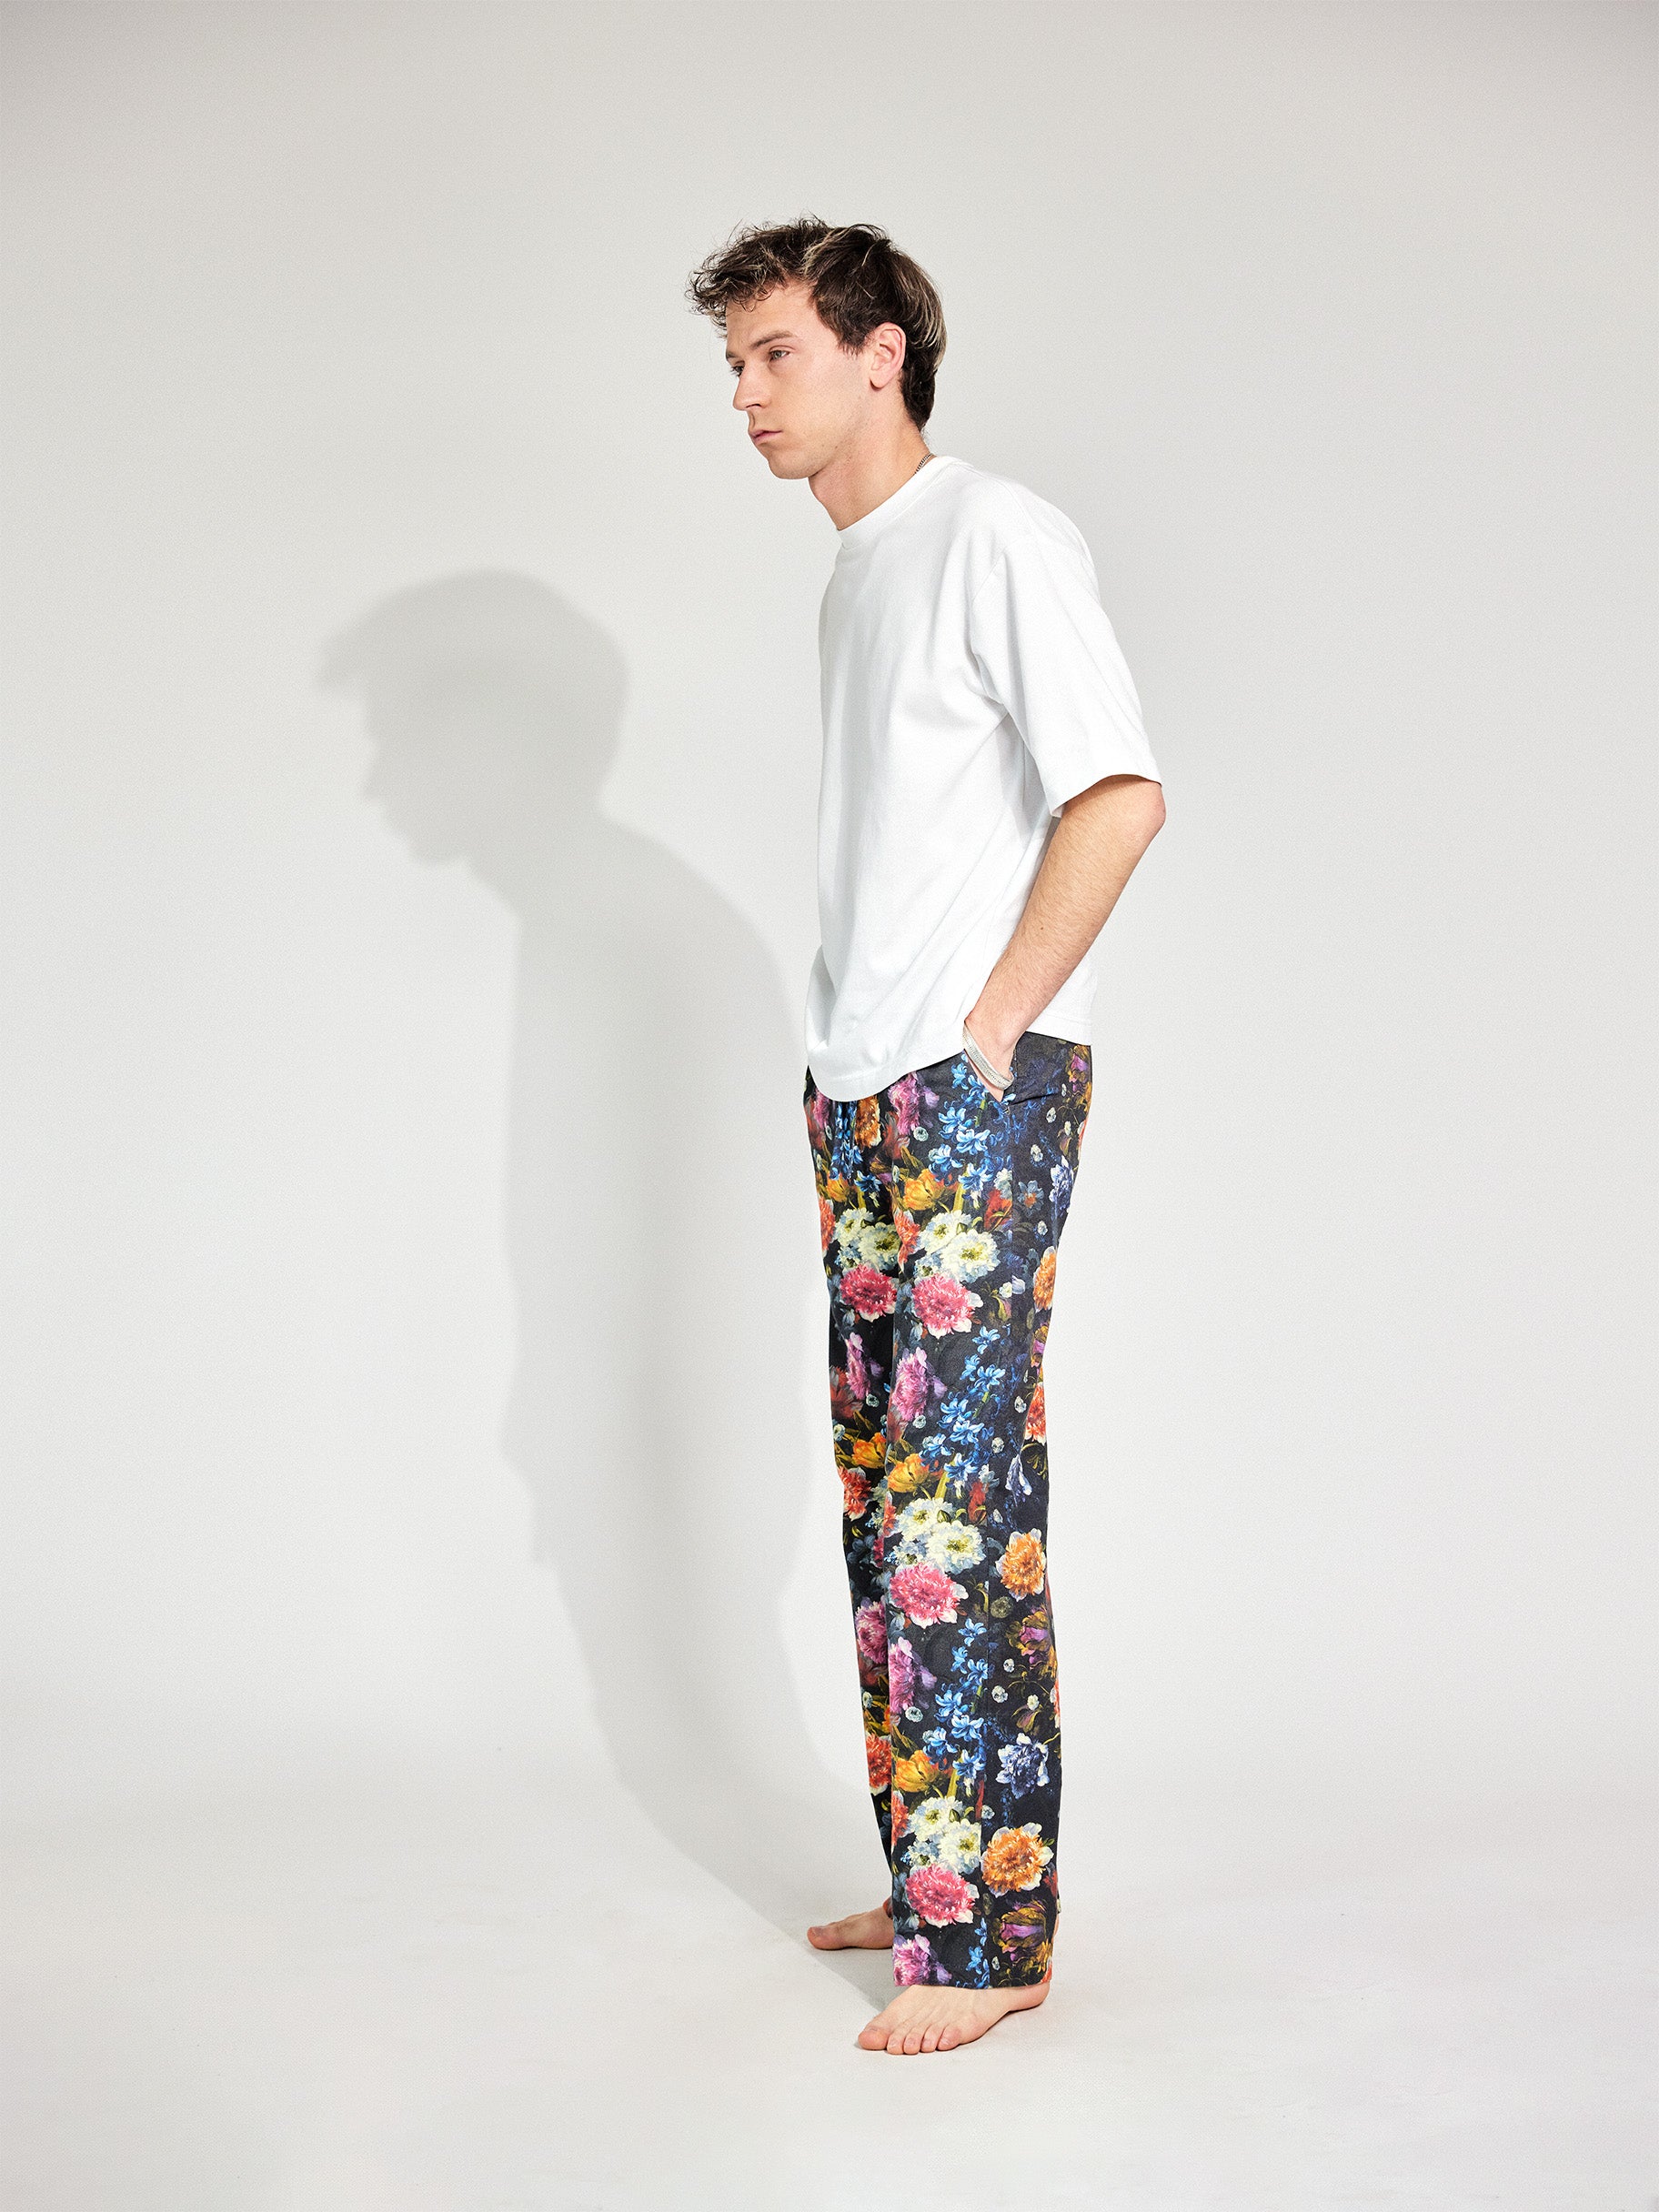 Mann trägt Hose im Pyjama-Style aus Baumwolle mit tiefen Hosentaschen und bunten Blumenmuster